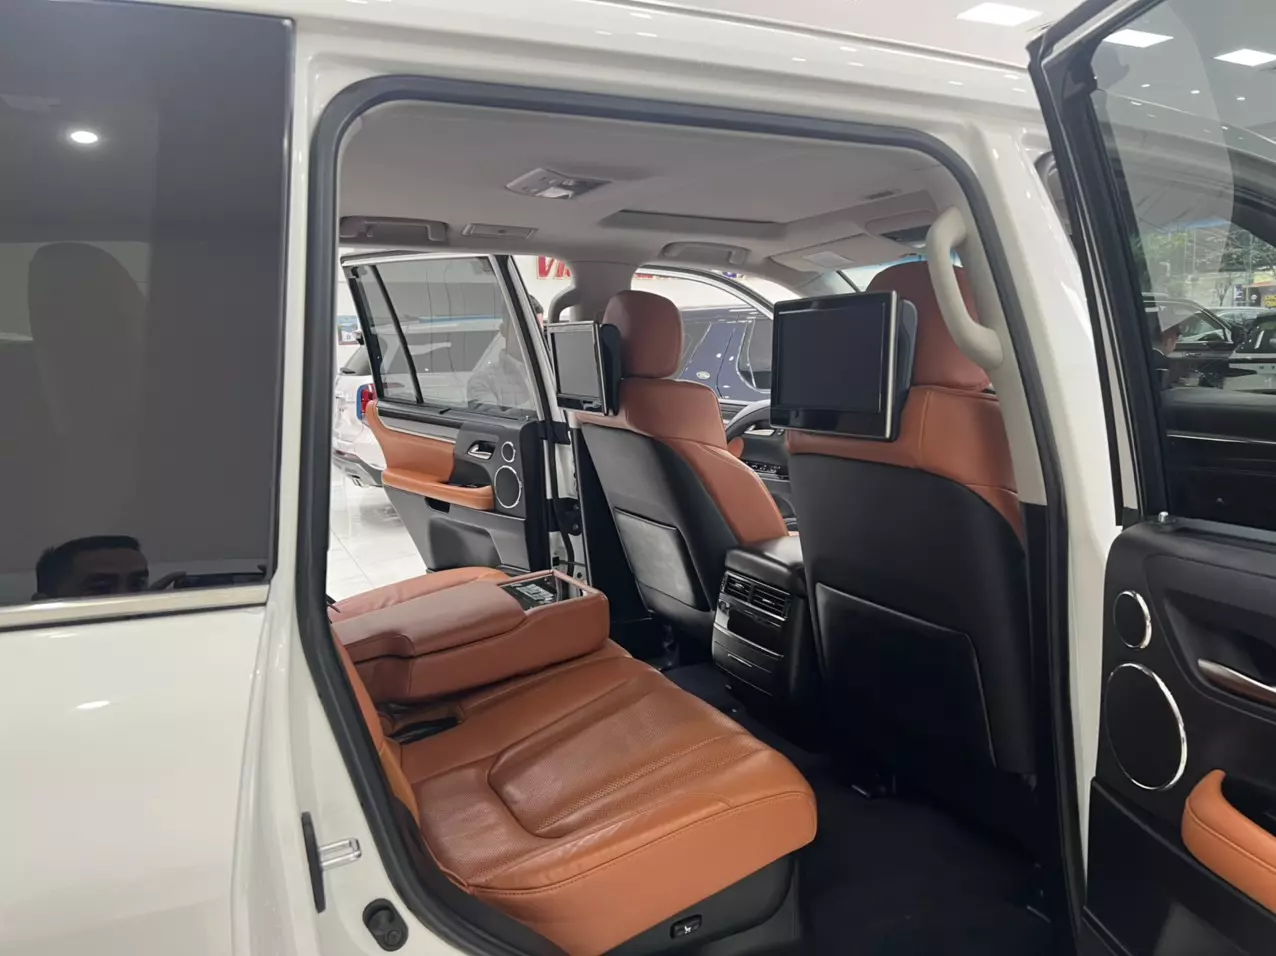 Bán Lexus LX570 Trung Đông sản xuất năm 2016 màu Trắng nội thất Nâu da bò, xe đăng ký tên cá nhân đi hơn 10v Km-5